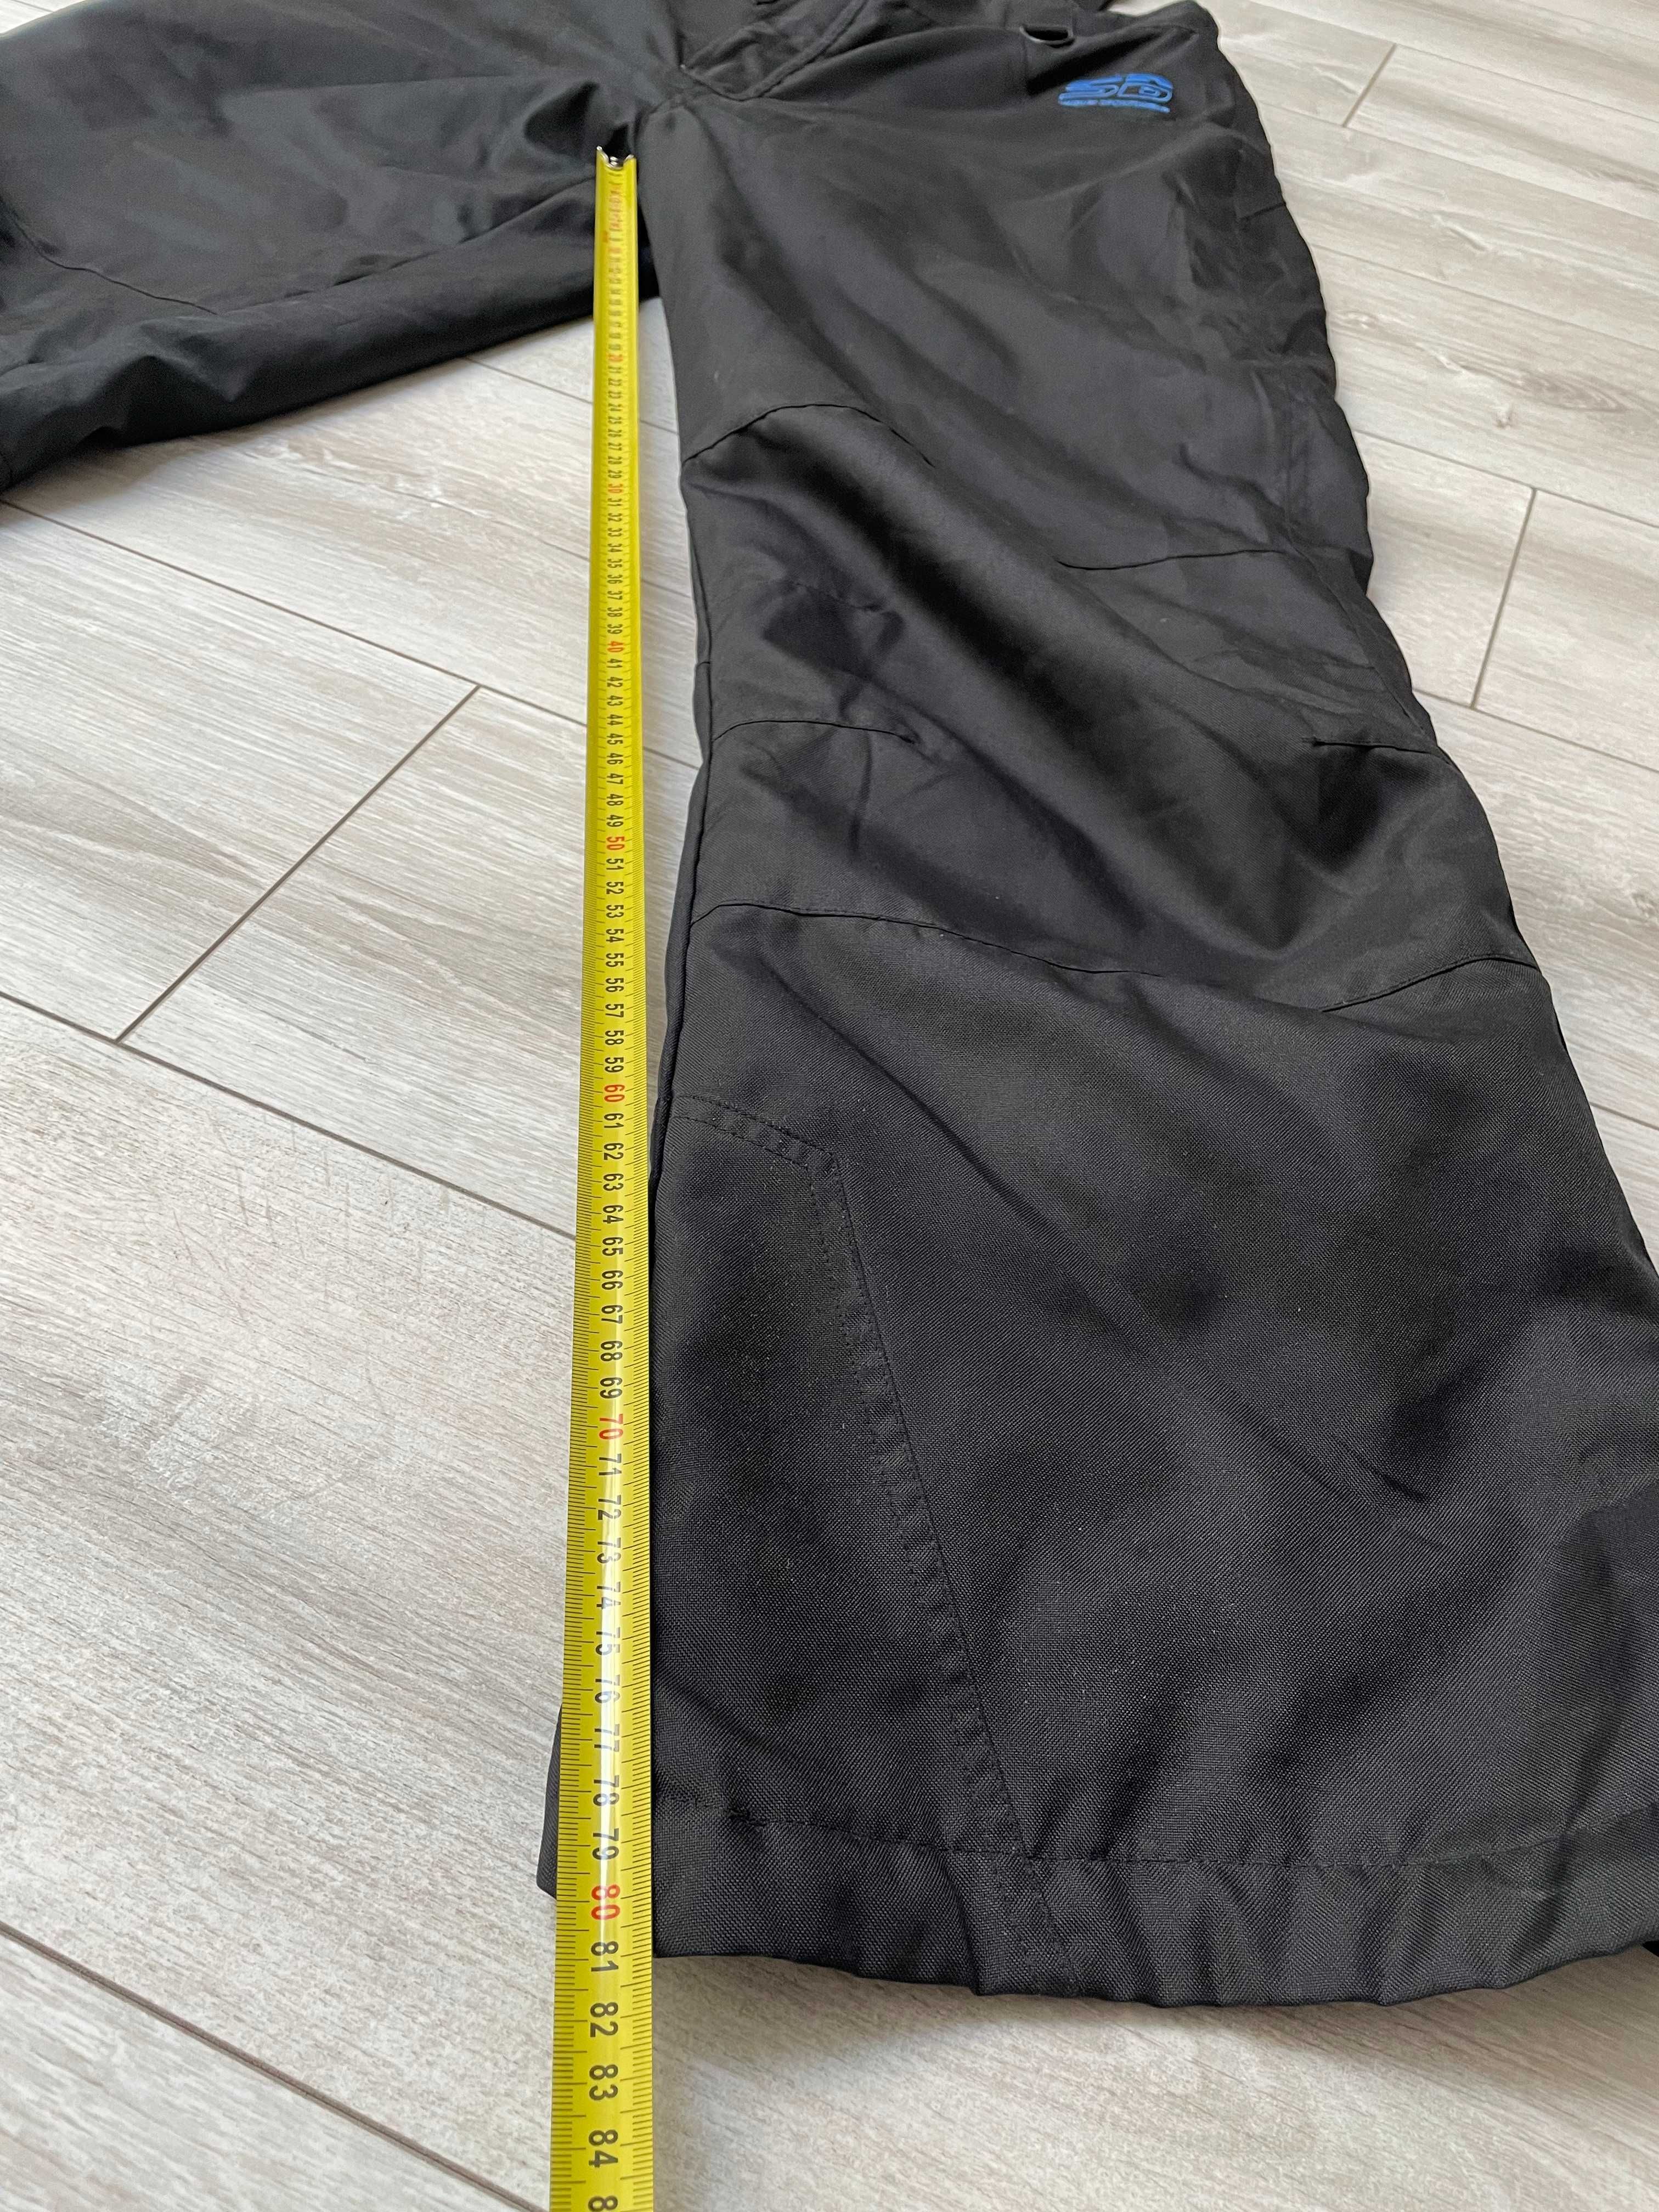 Narciarskie spodnie sportowe męskie zimowe ocieplane czarne rozmiar L